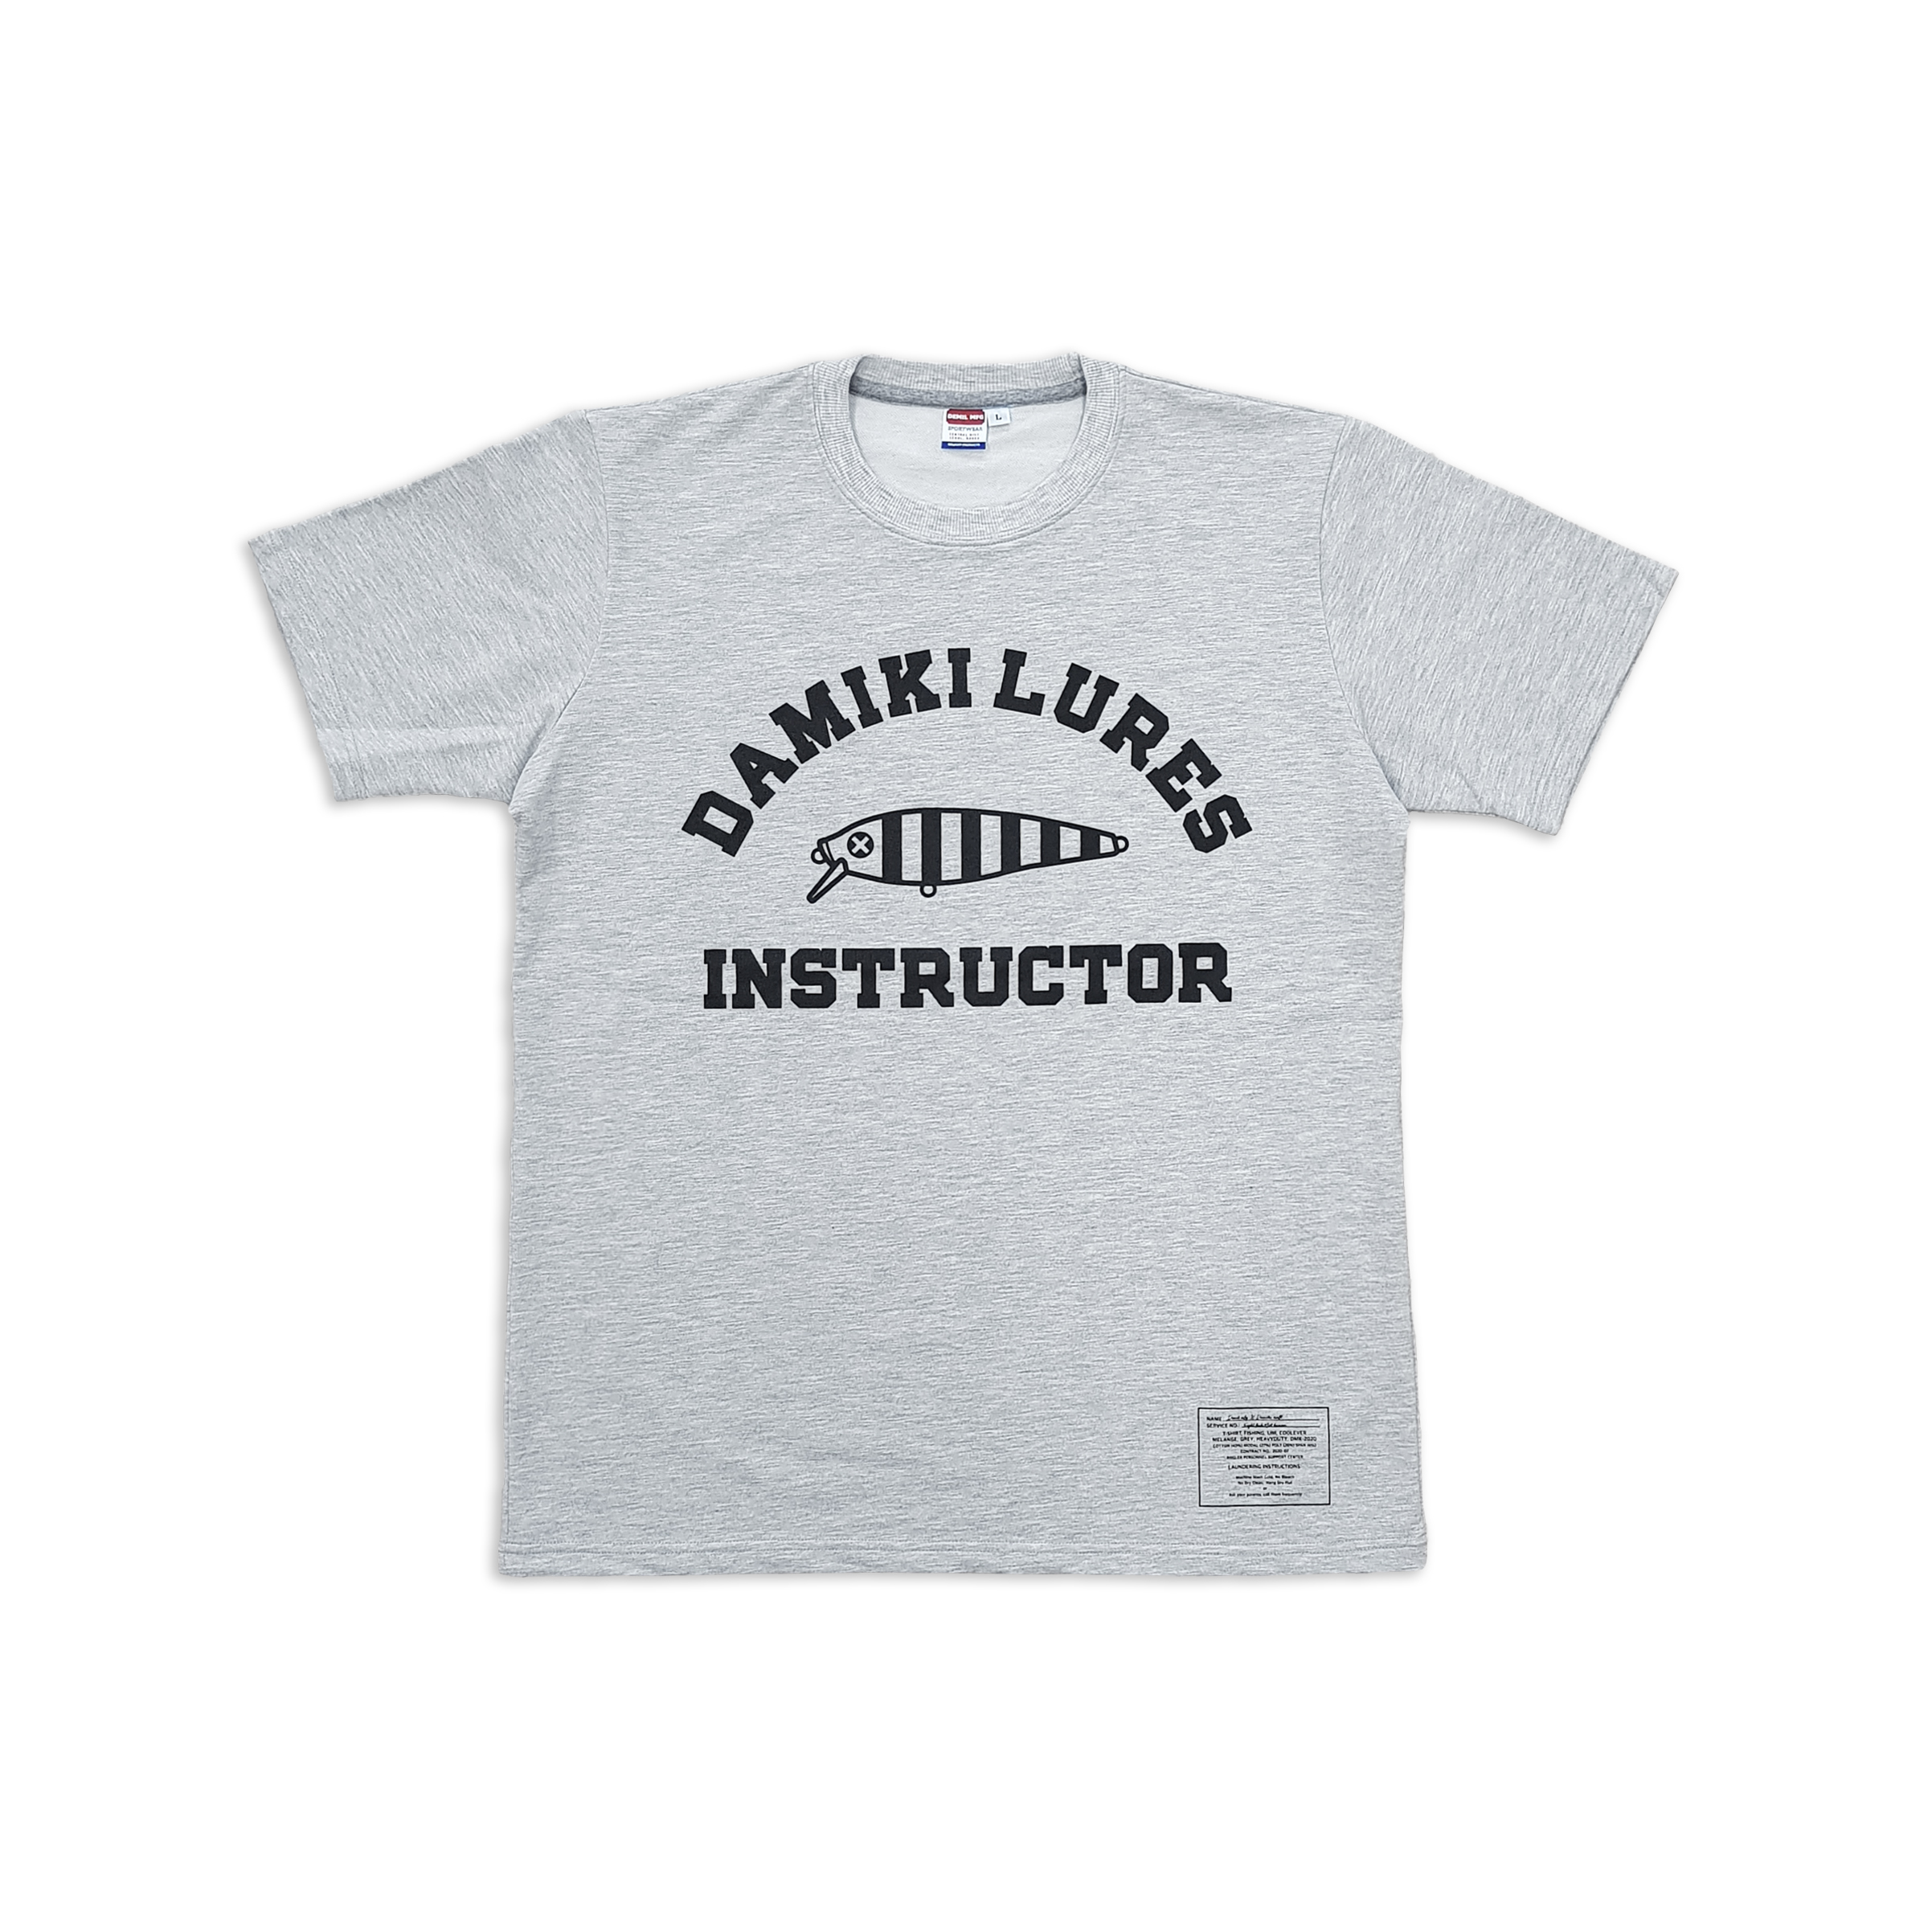 다미끼 공식 홈페이지,데밀 x 다미끼 루어 인스트럭터 티셔츠